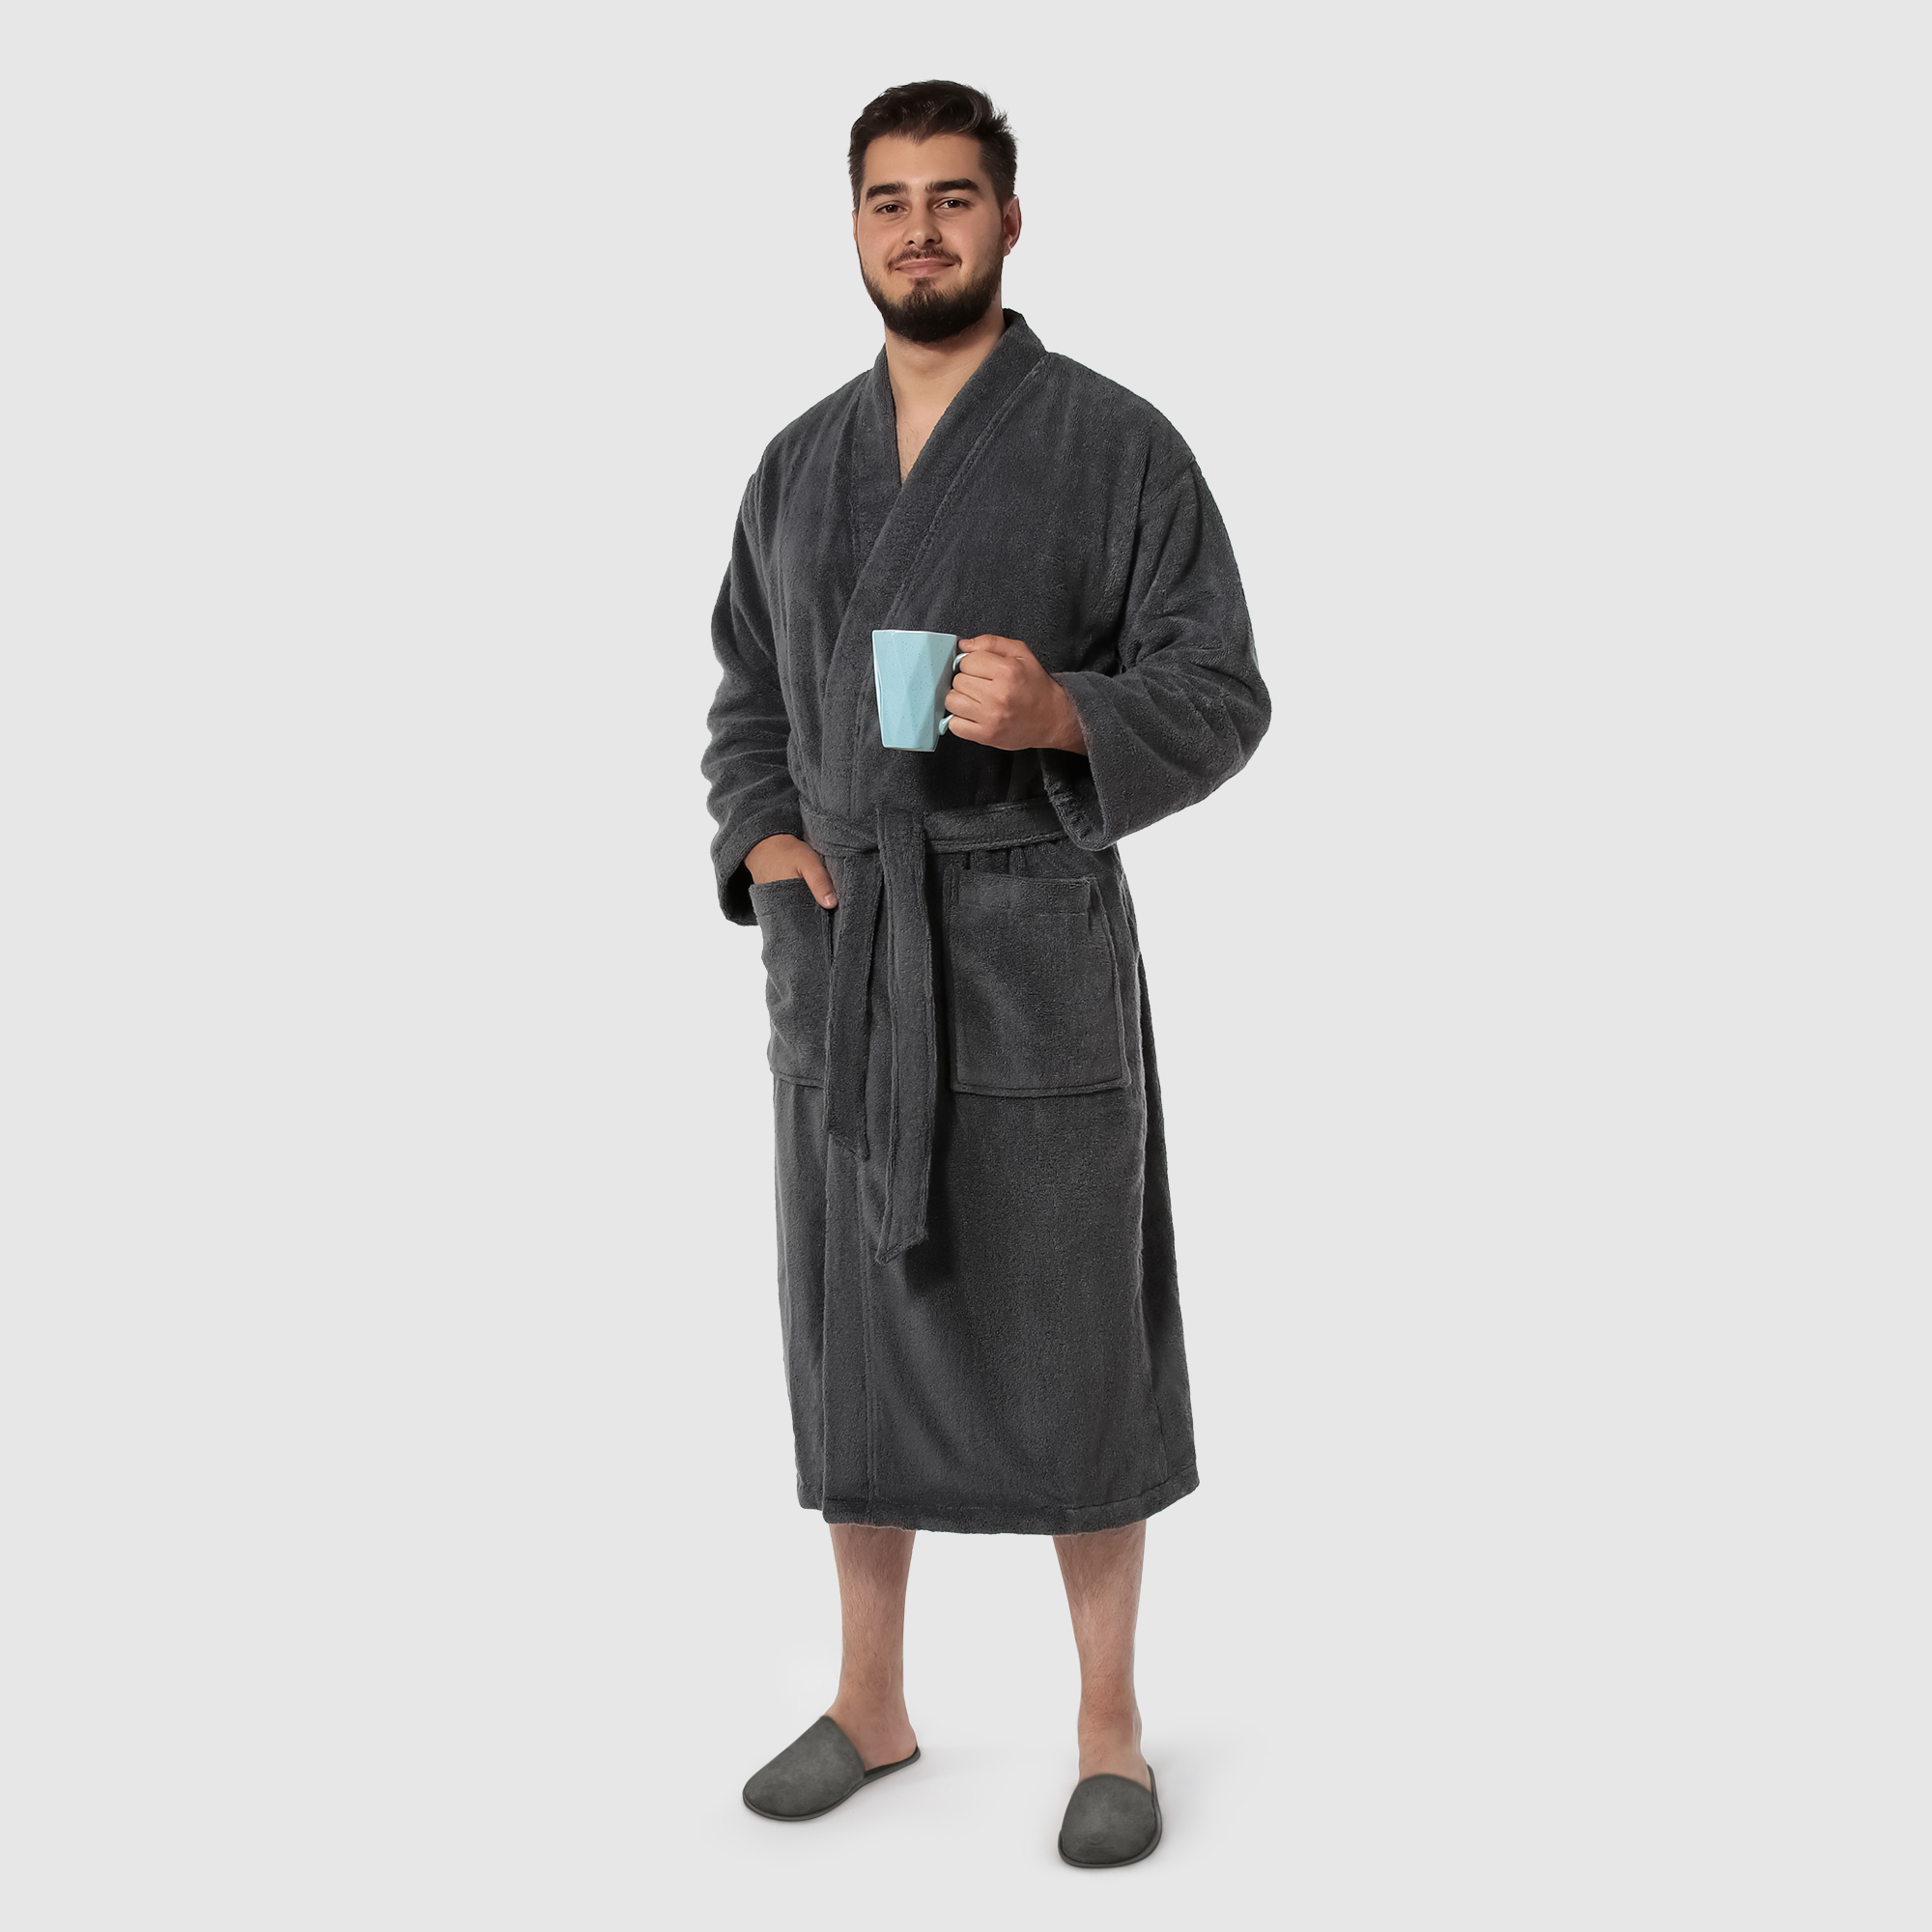 Мужской халат Maisonette Parla тёмно-серый S халат мужской asil sauna brown xl махровый с капюшоном